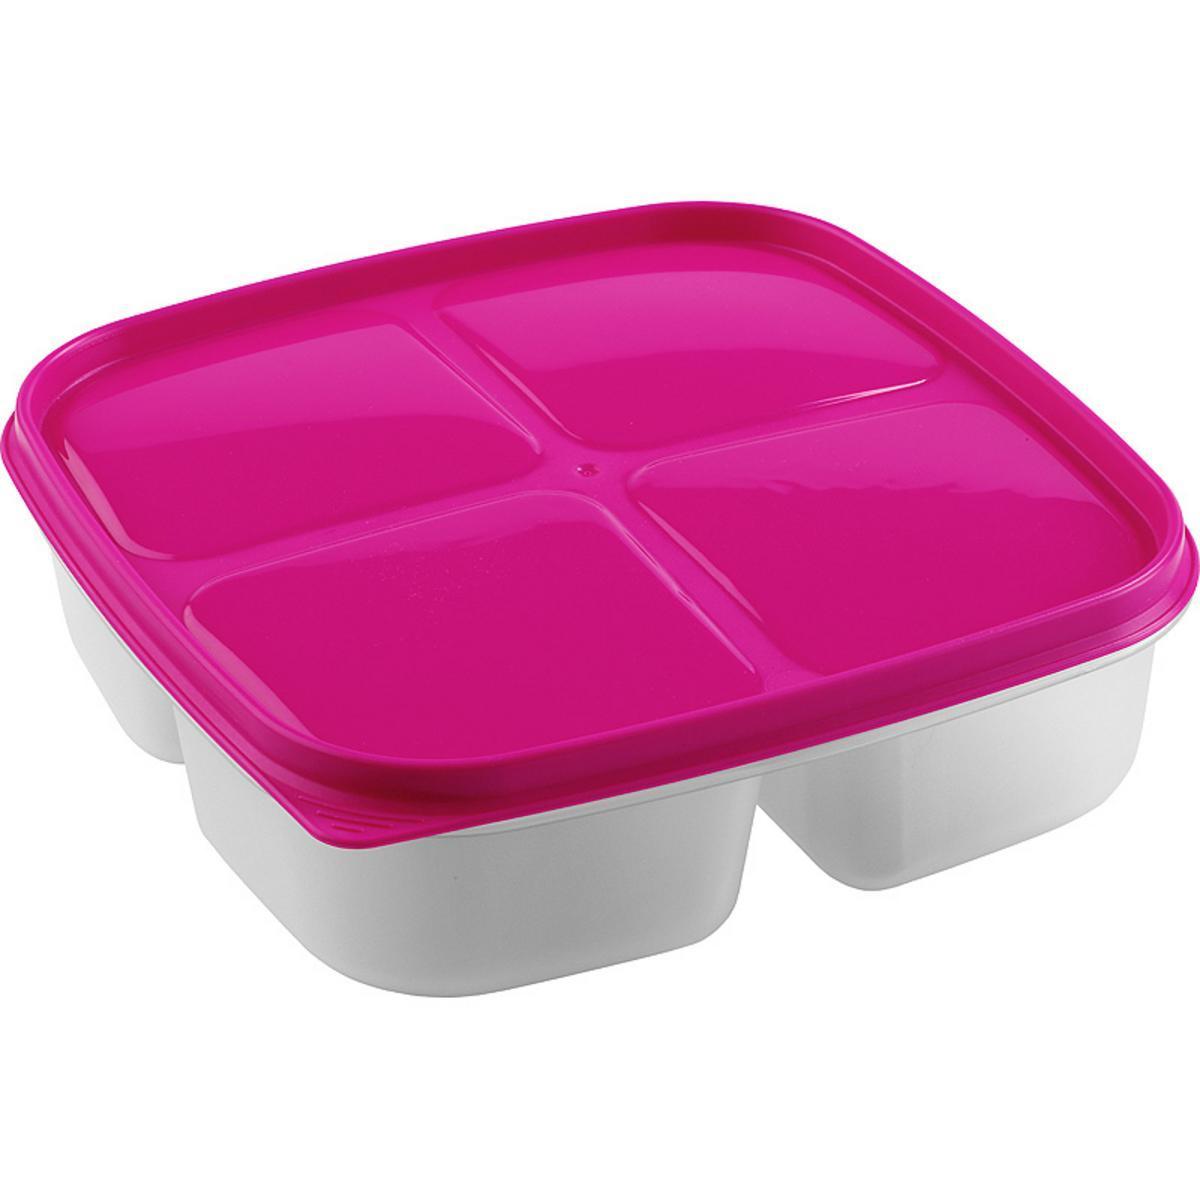 Boîte 3 compartiments en plastique - 1,6 L - 21,5 x 21,5 x 5,6 cm - Différents coloris